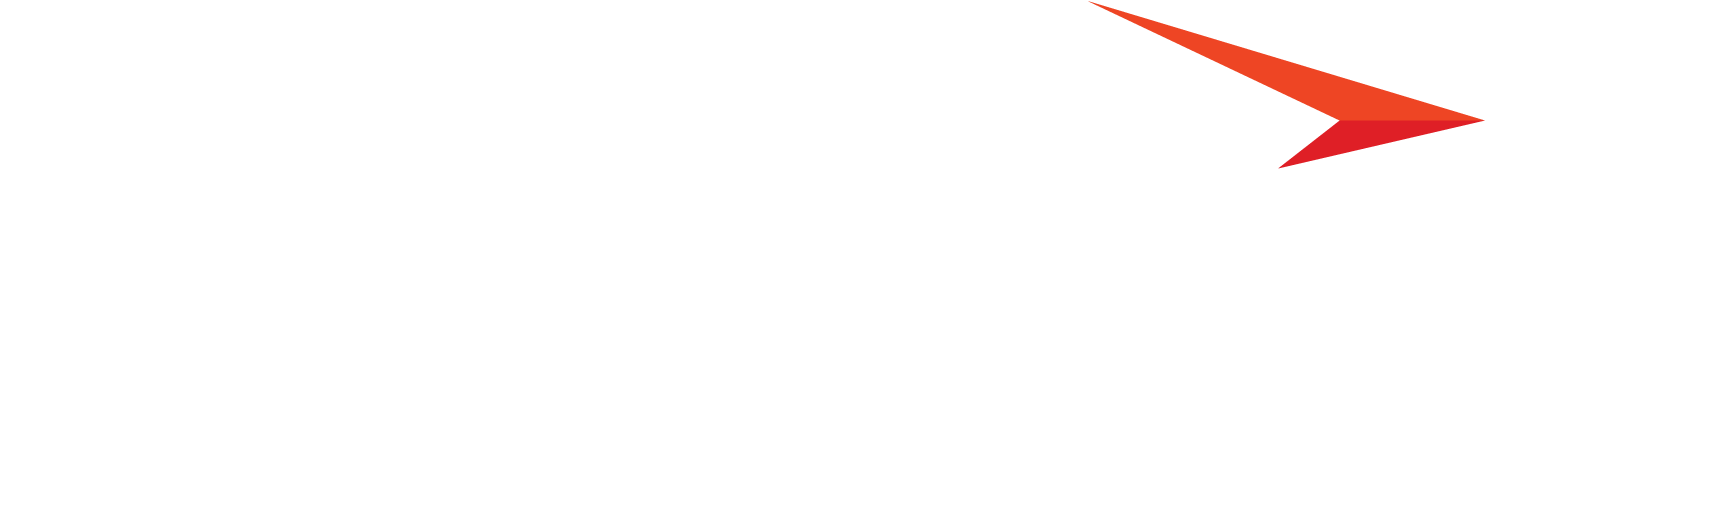 creatio logo white